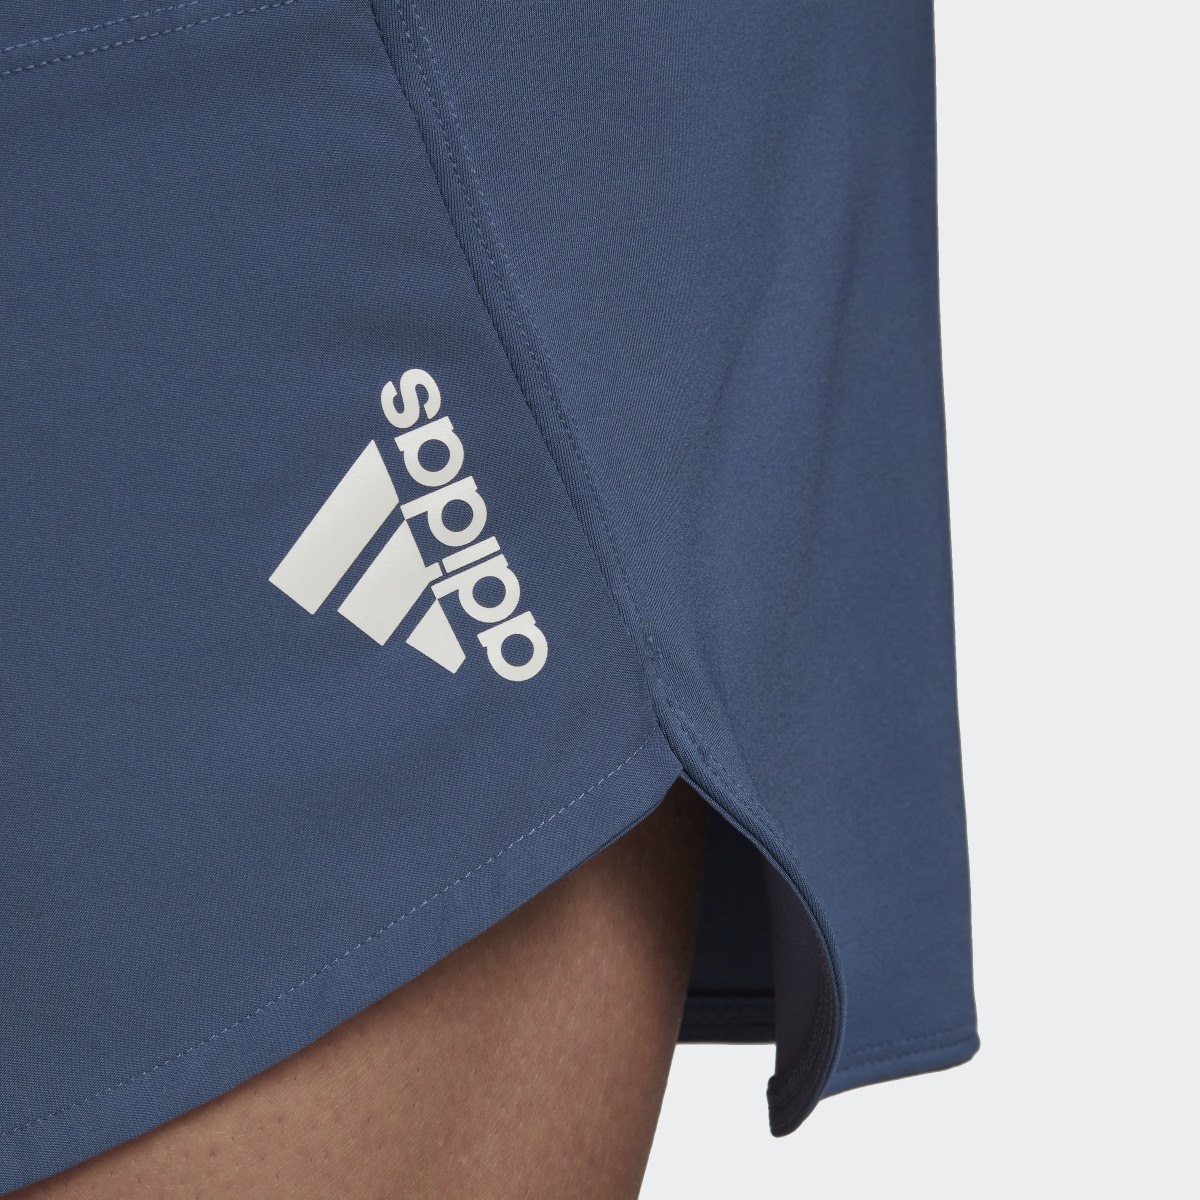 Adidas Designed for Training Shorts. 6